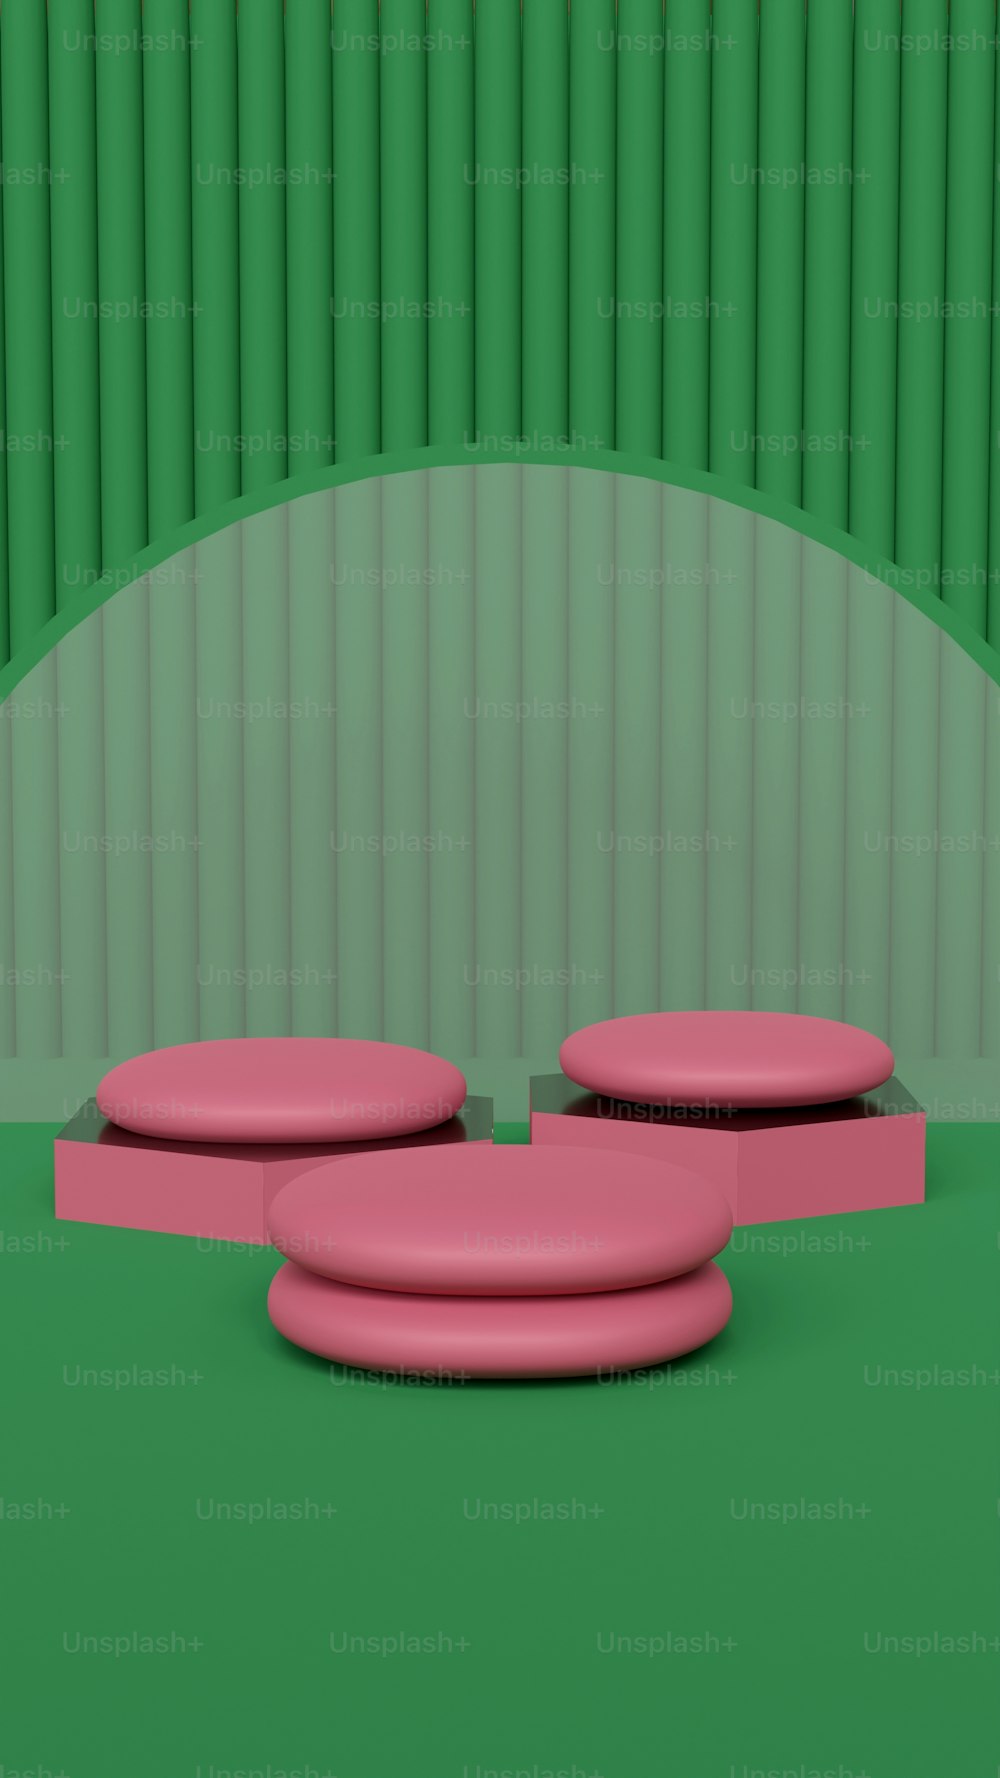 Ein rosa Objekt, das auf einem grünen Boden sitzt